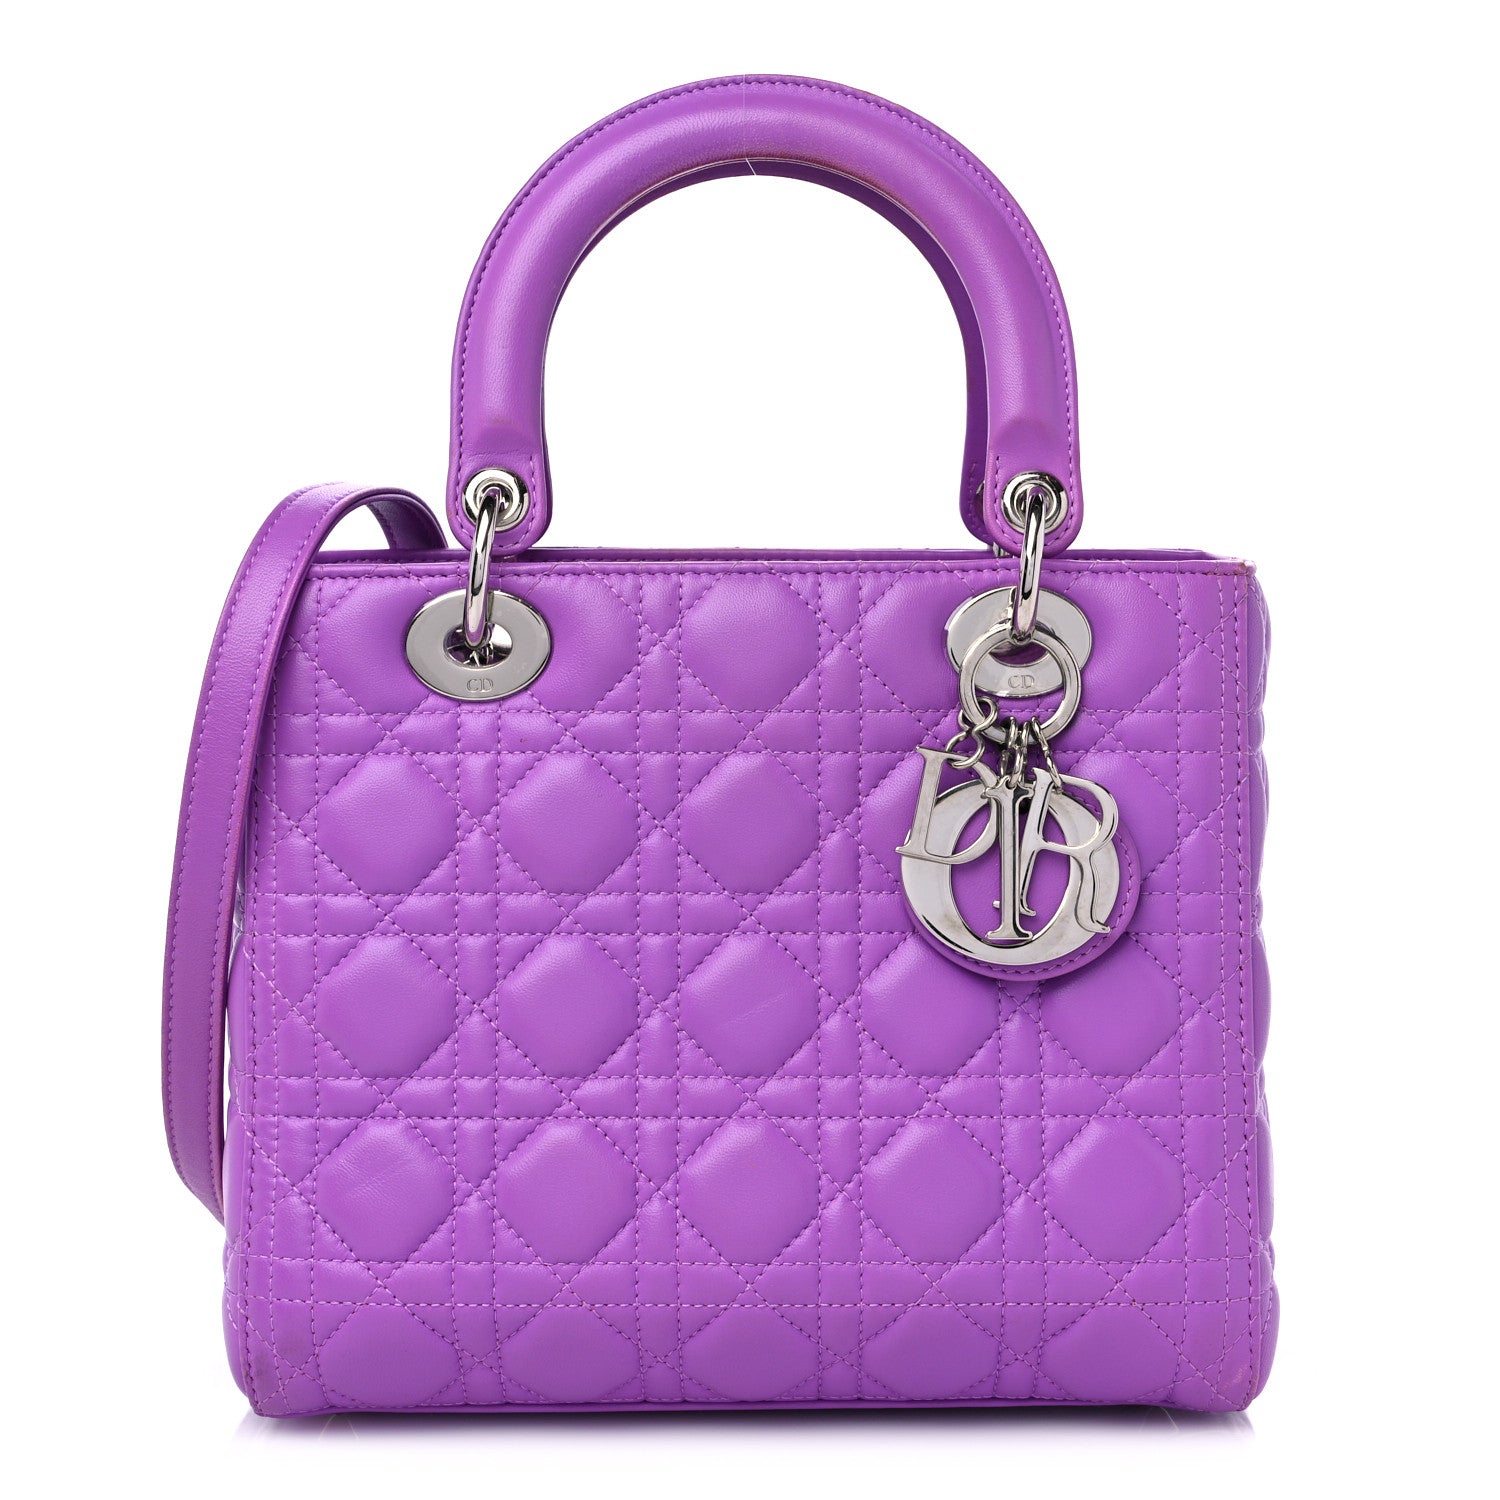 Quanto costa la borsa di Lady Dior